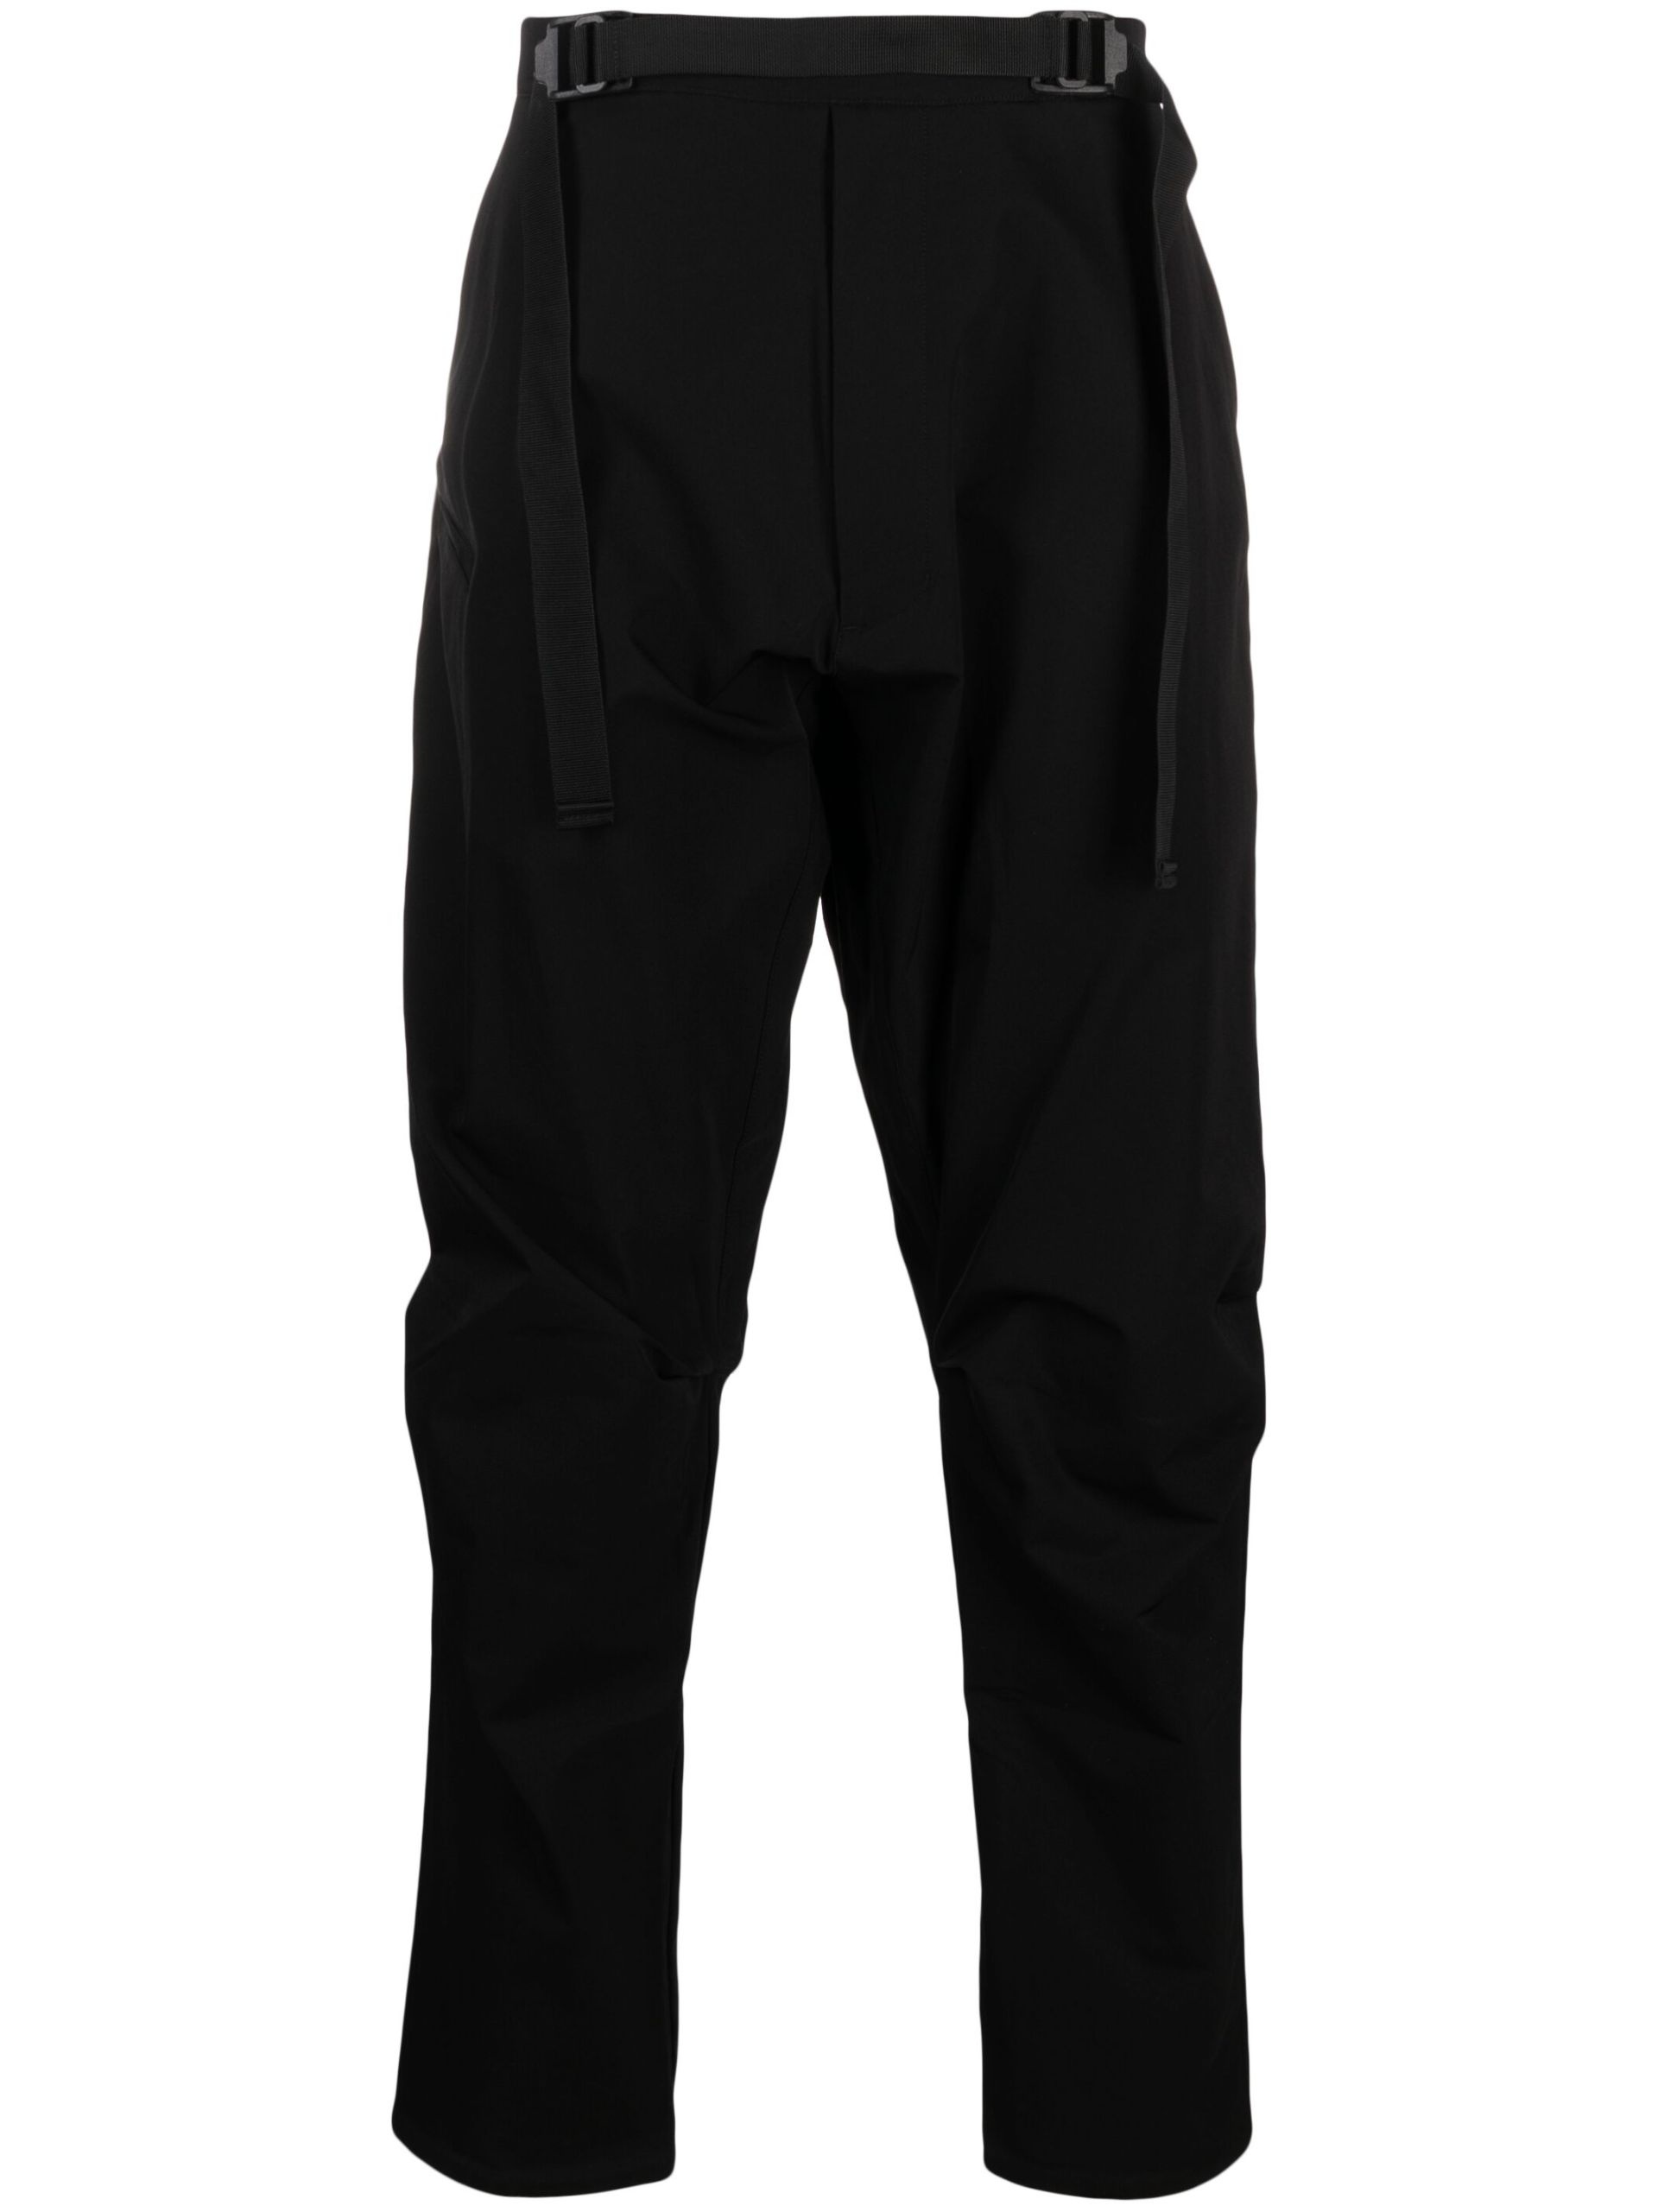 Black Schoeller Dryskin Drawcord Trousers - 1